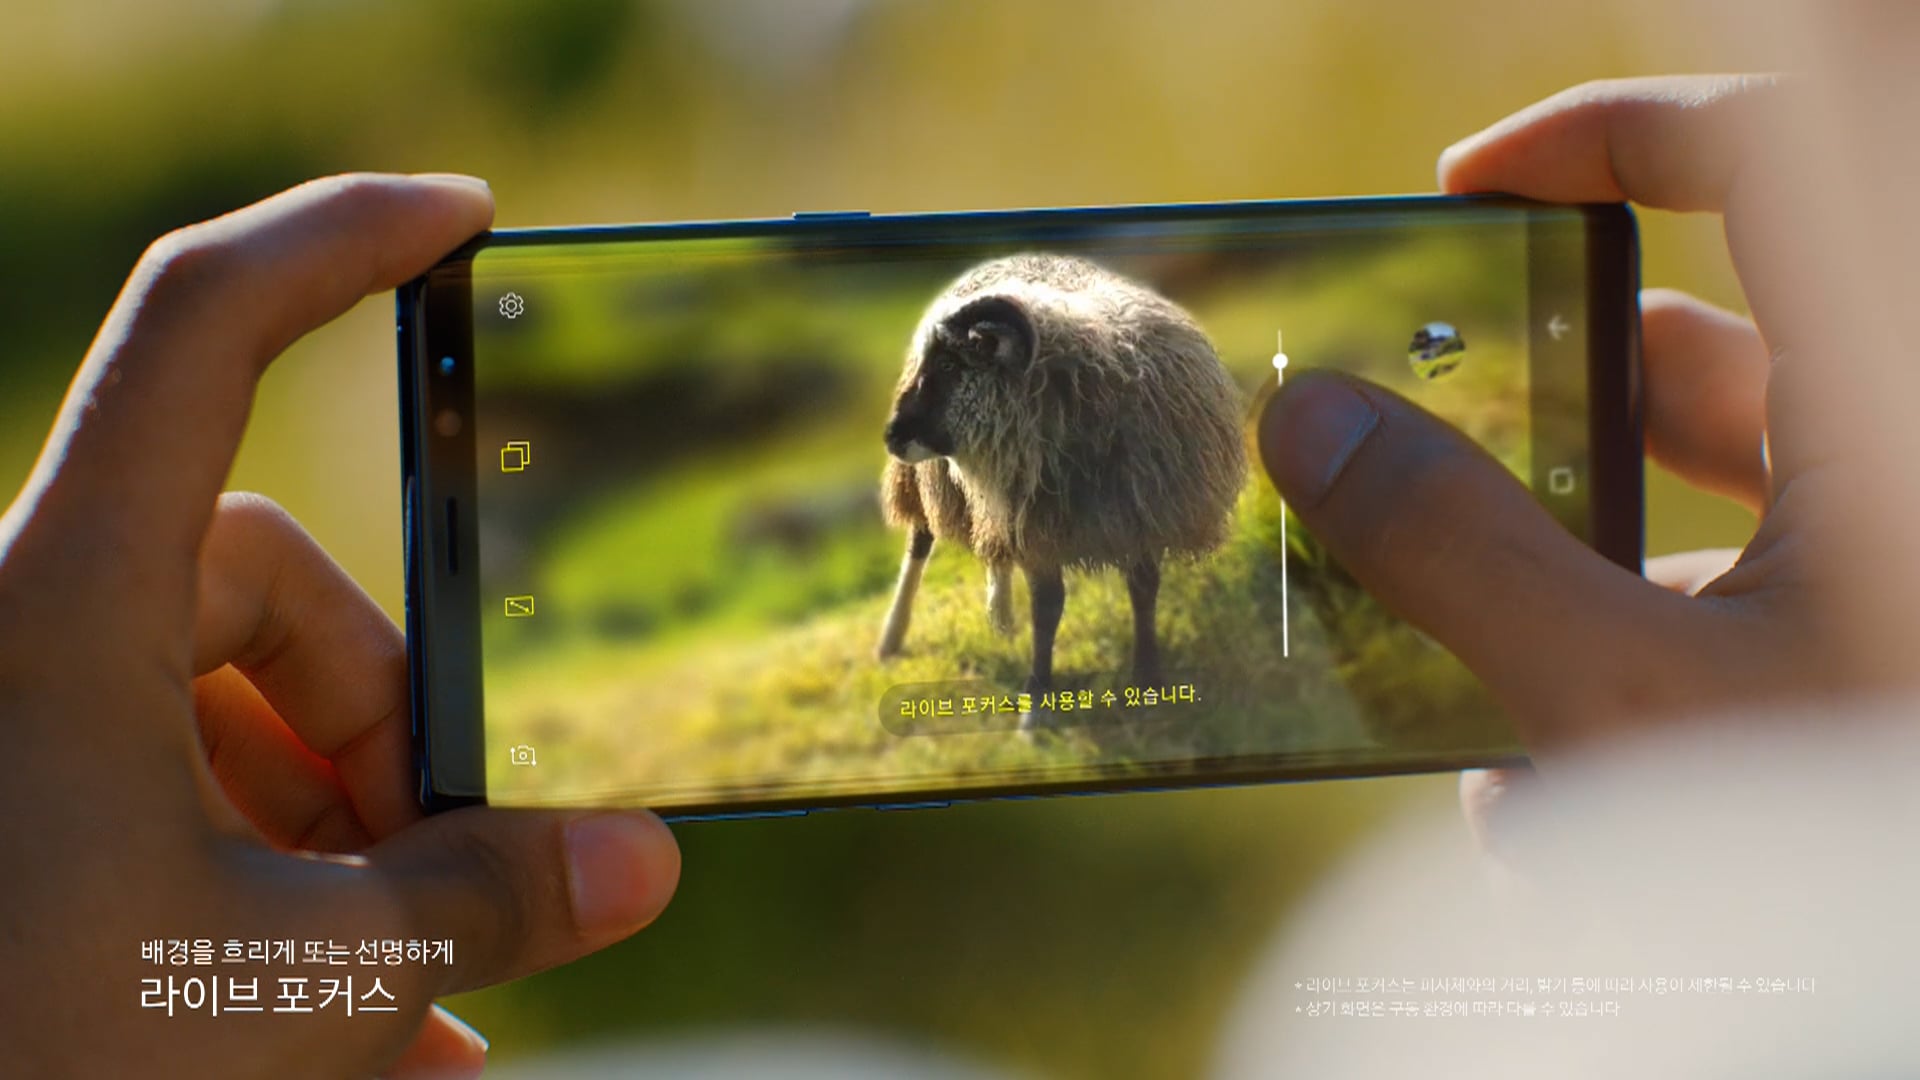 Samsung Galaxy Note 8 - Faroe Island